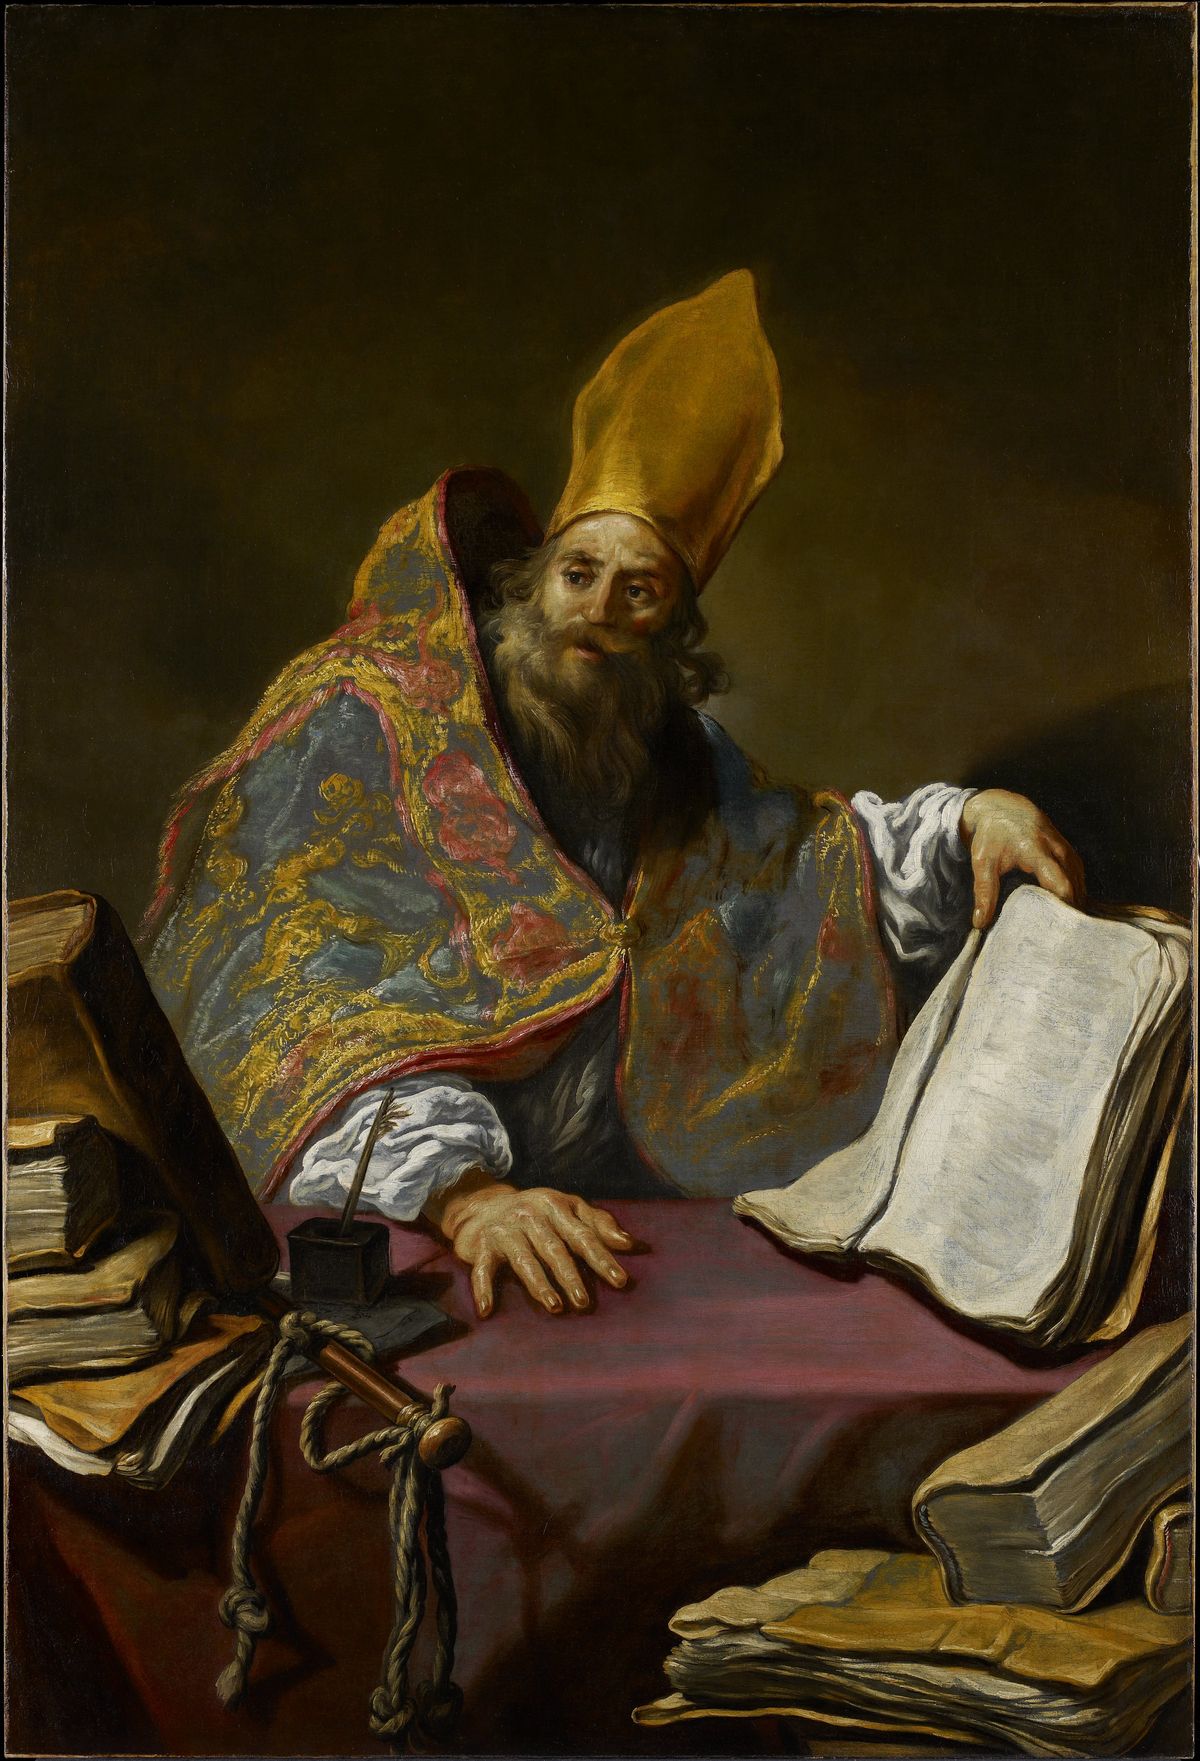 Saint Ambrose by Claude Vignon (1623-1625) - Public Domain Catholic Painting